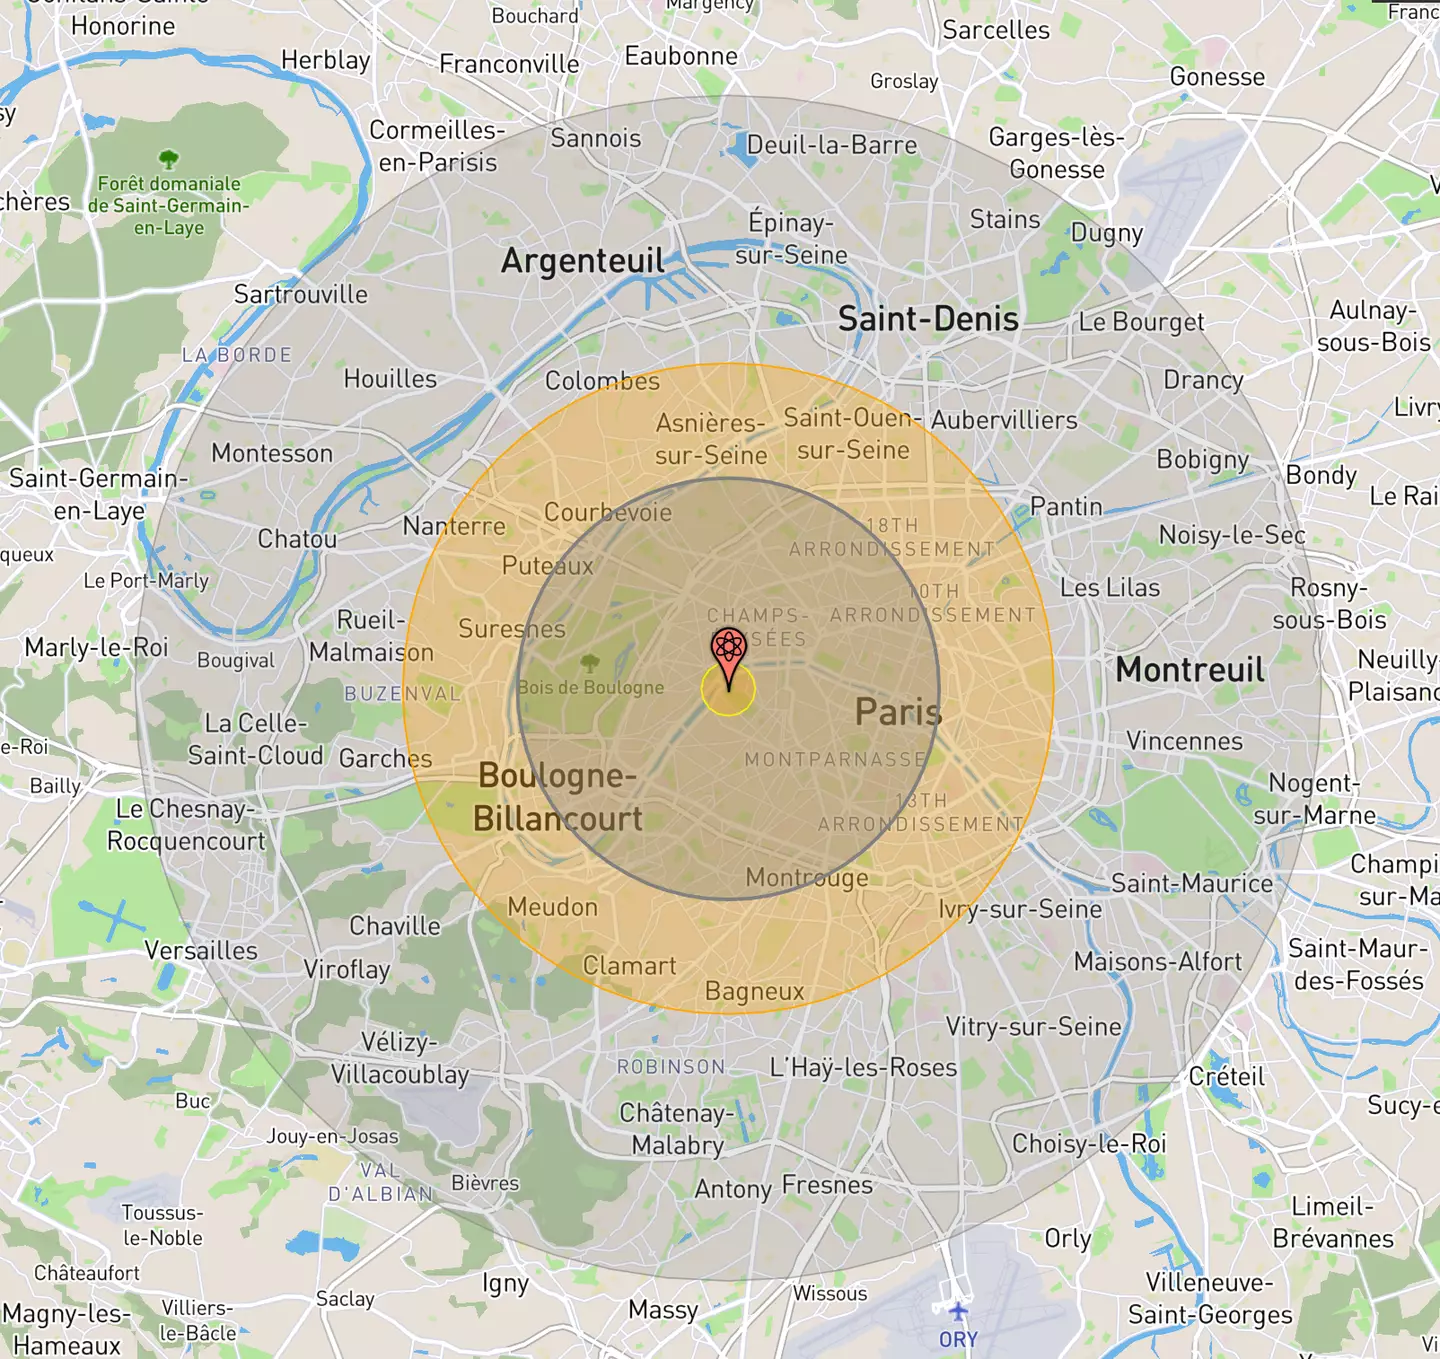 A US nuke over Paris.